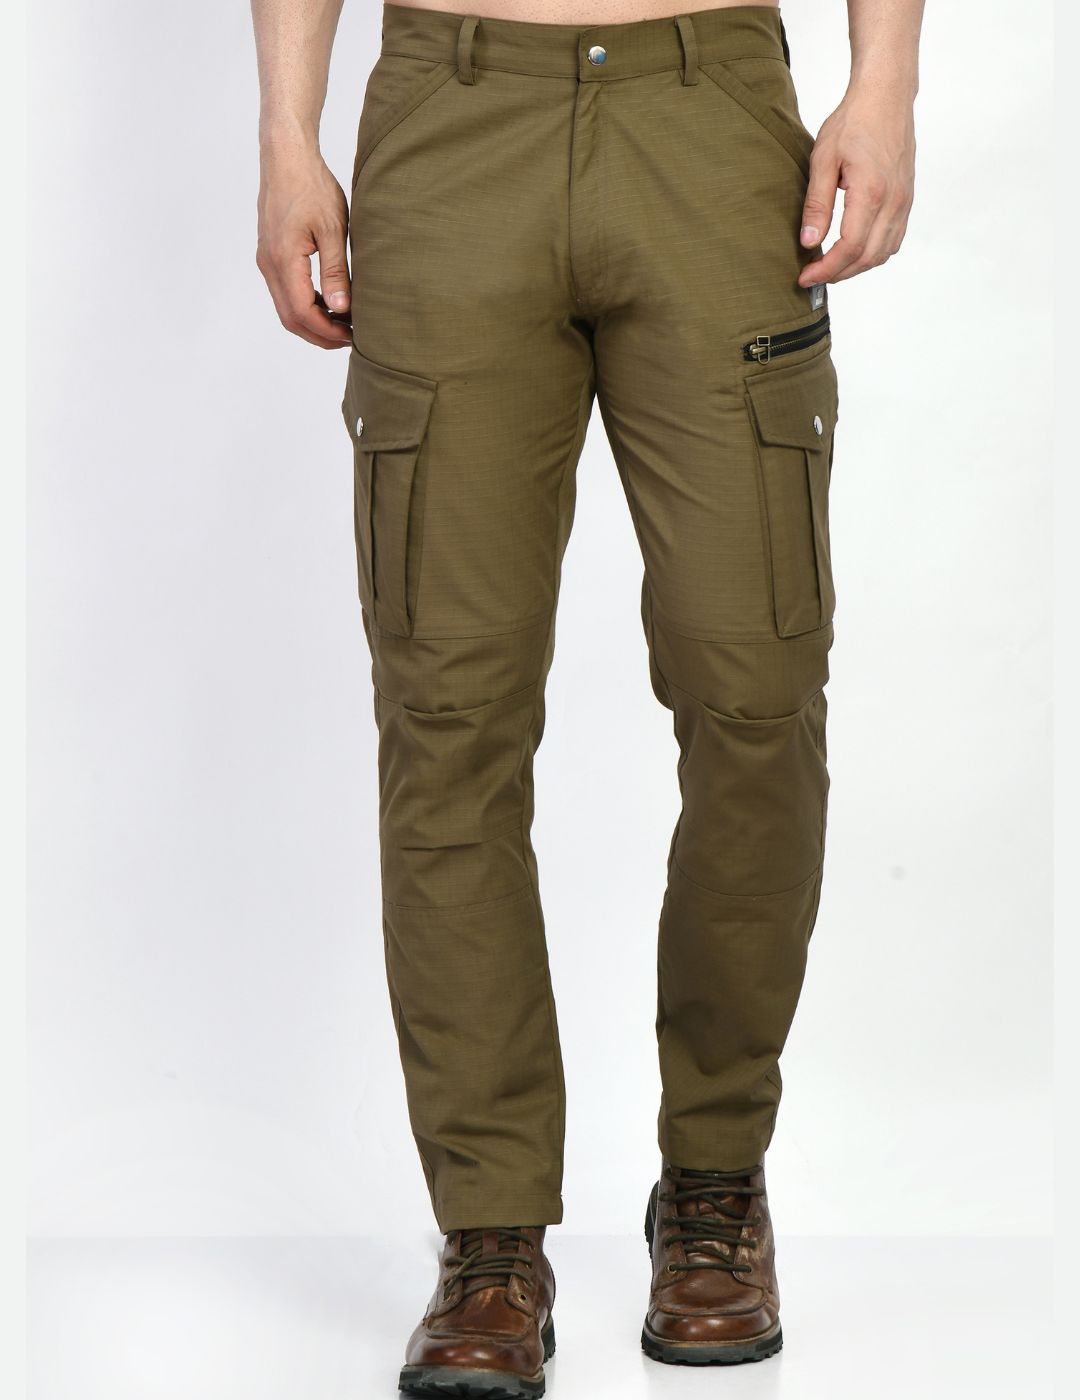 Men's 7-pocket Cargo Pants- Khaki